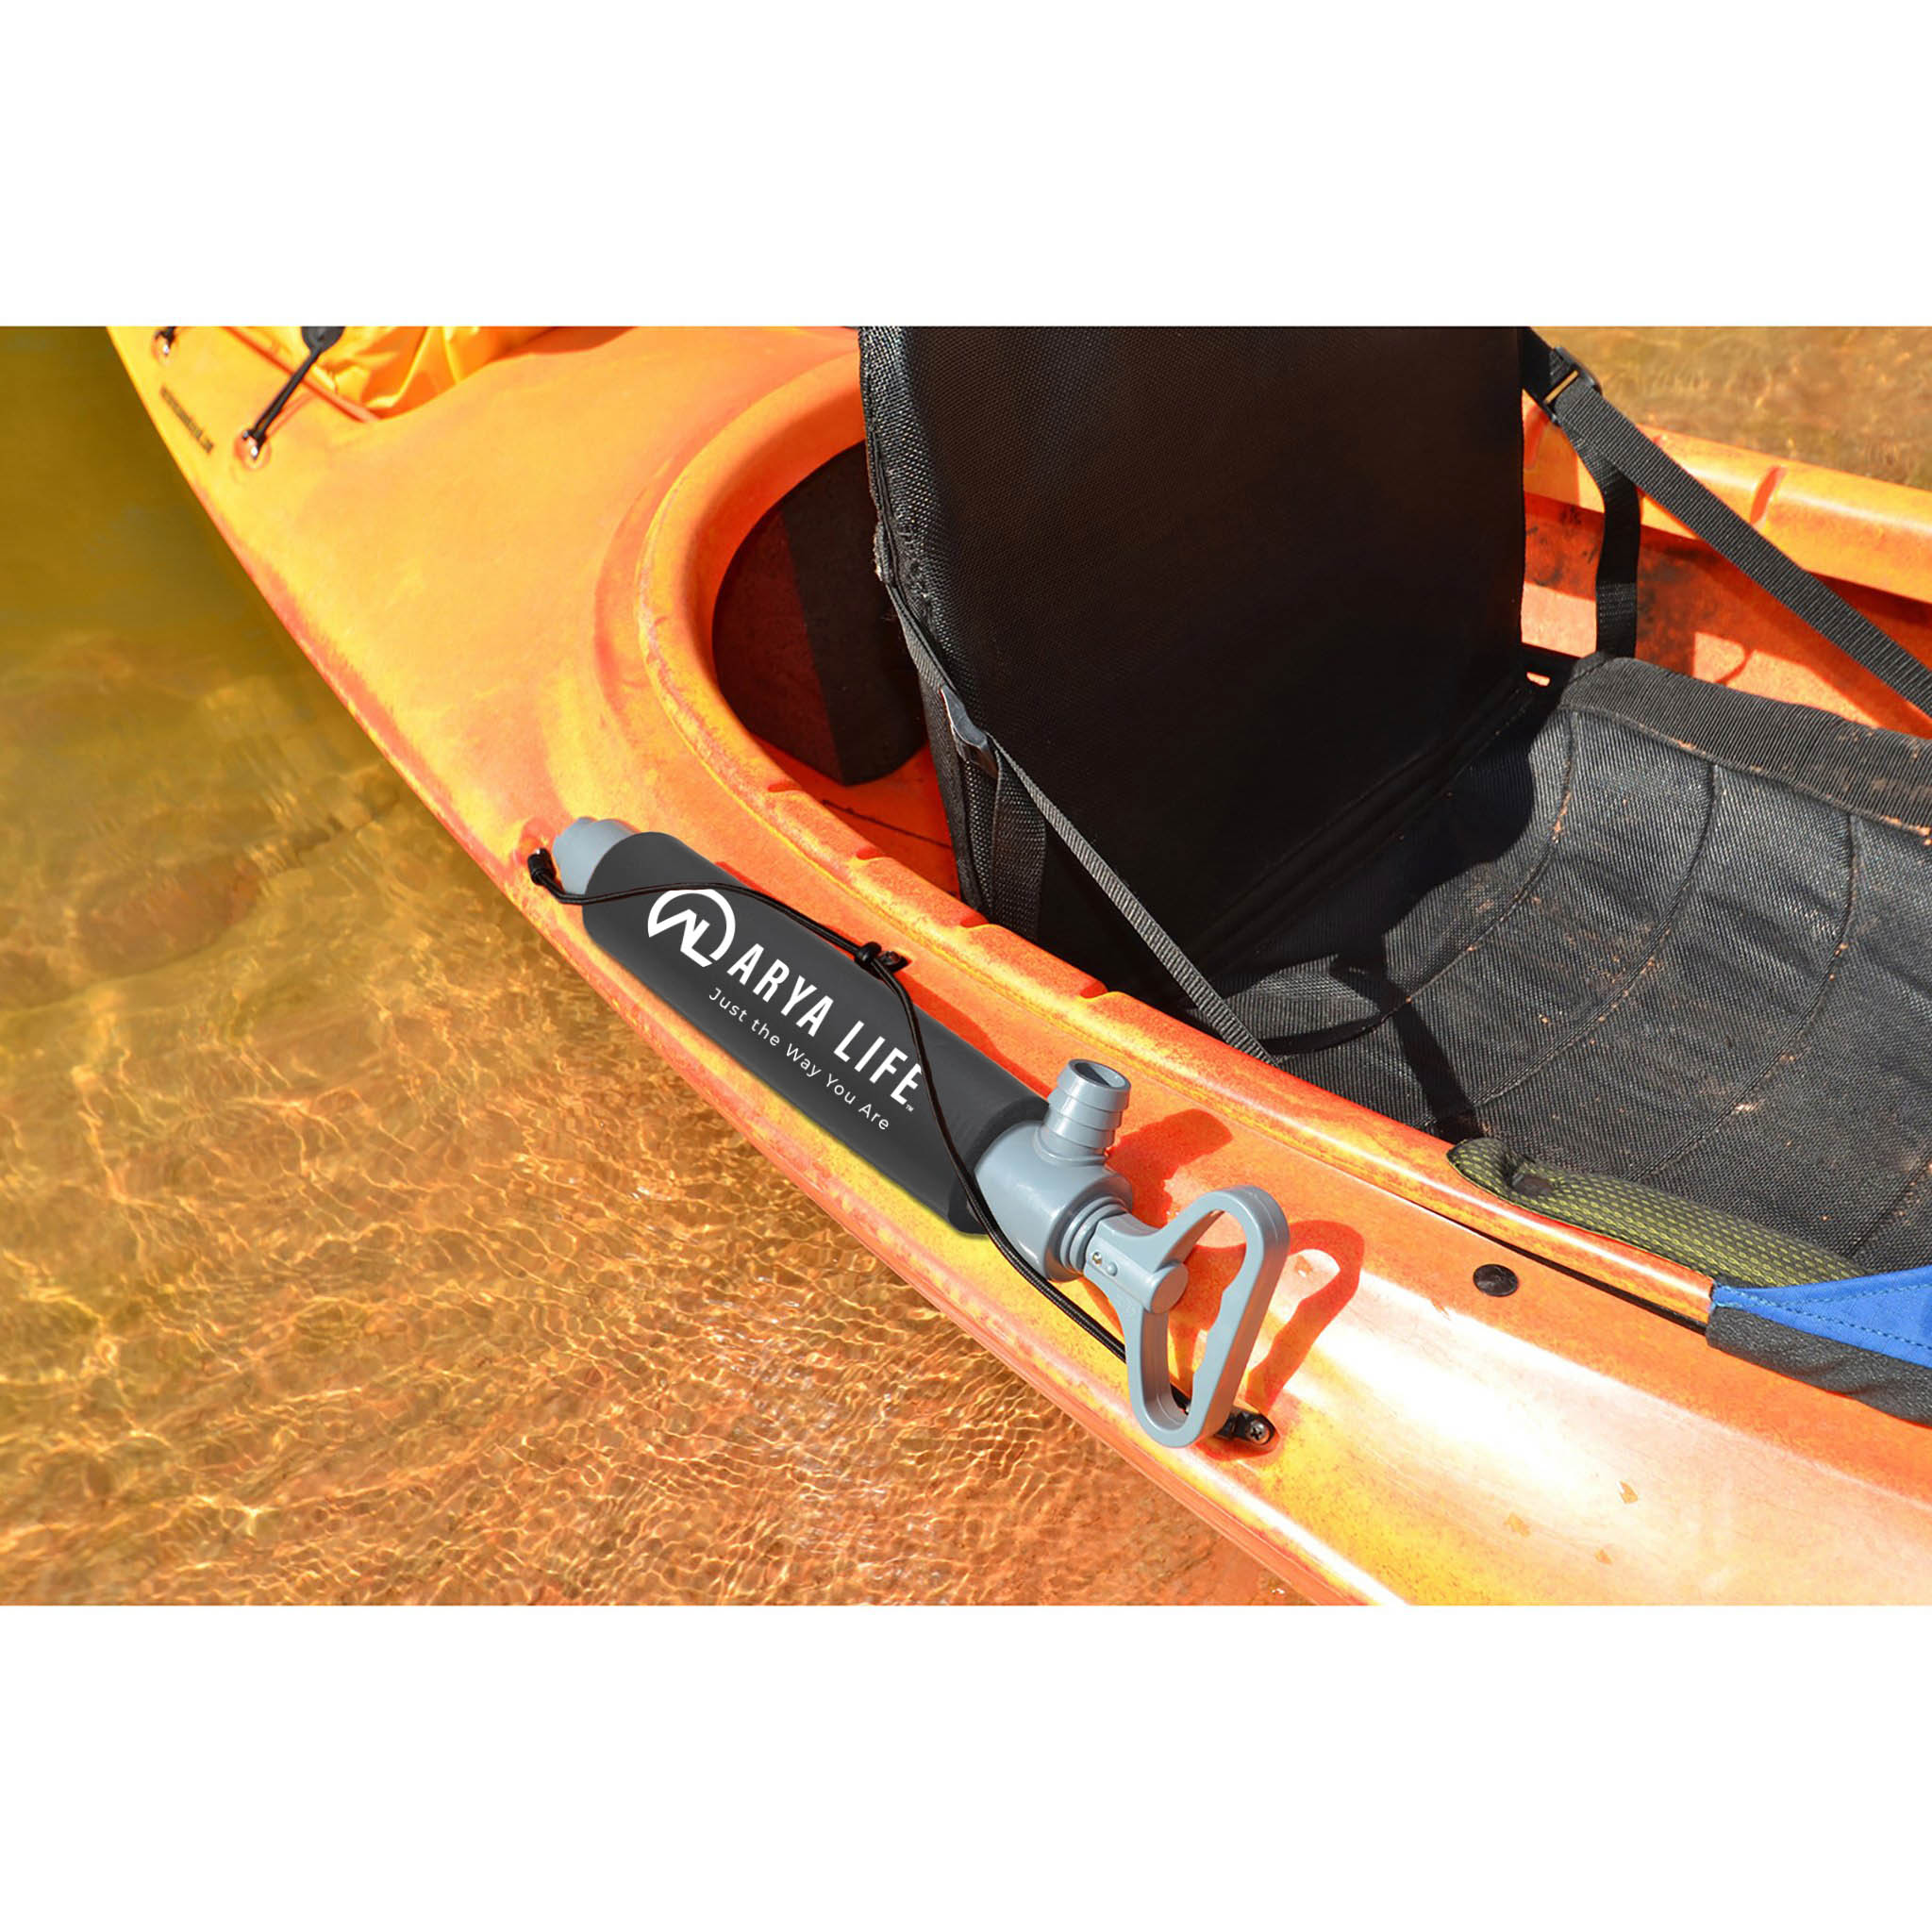 Hand Bilge Pump for kayak